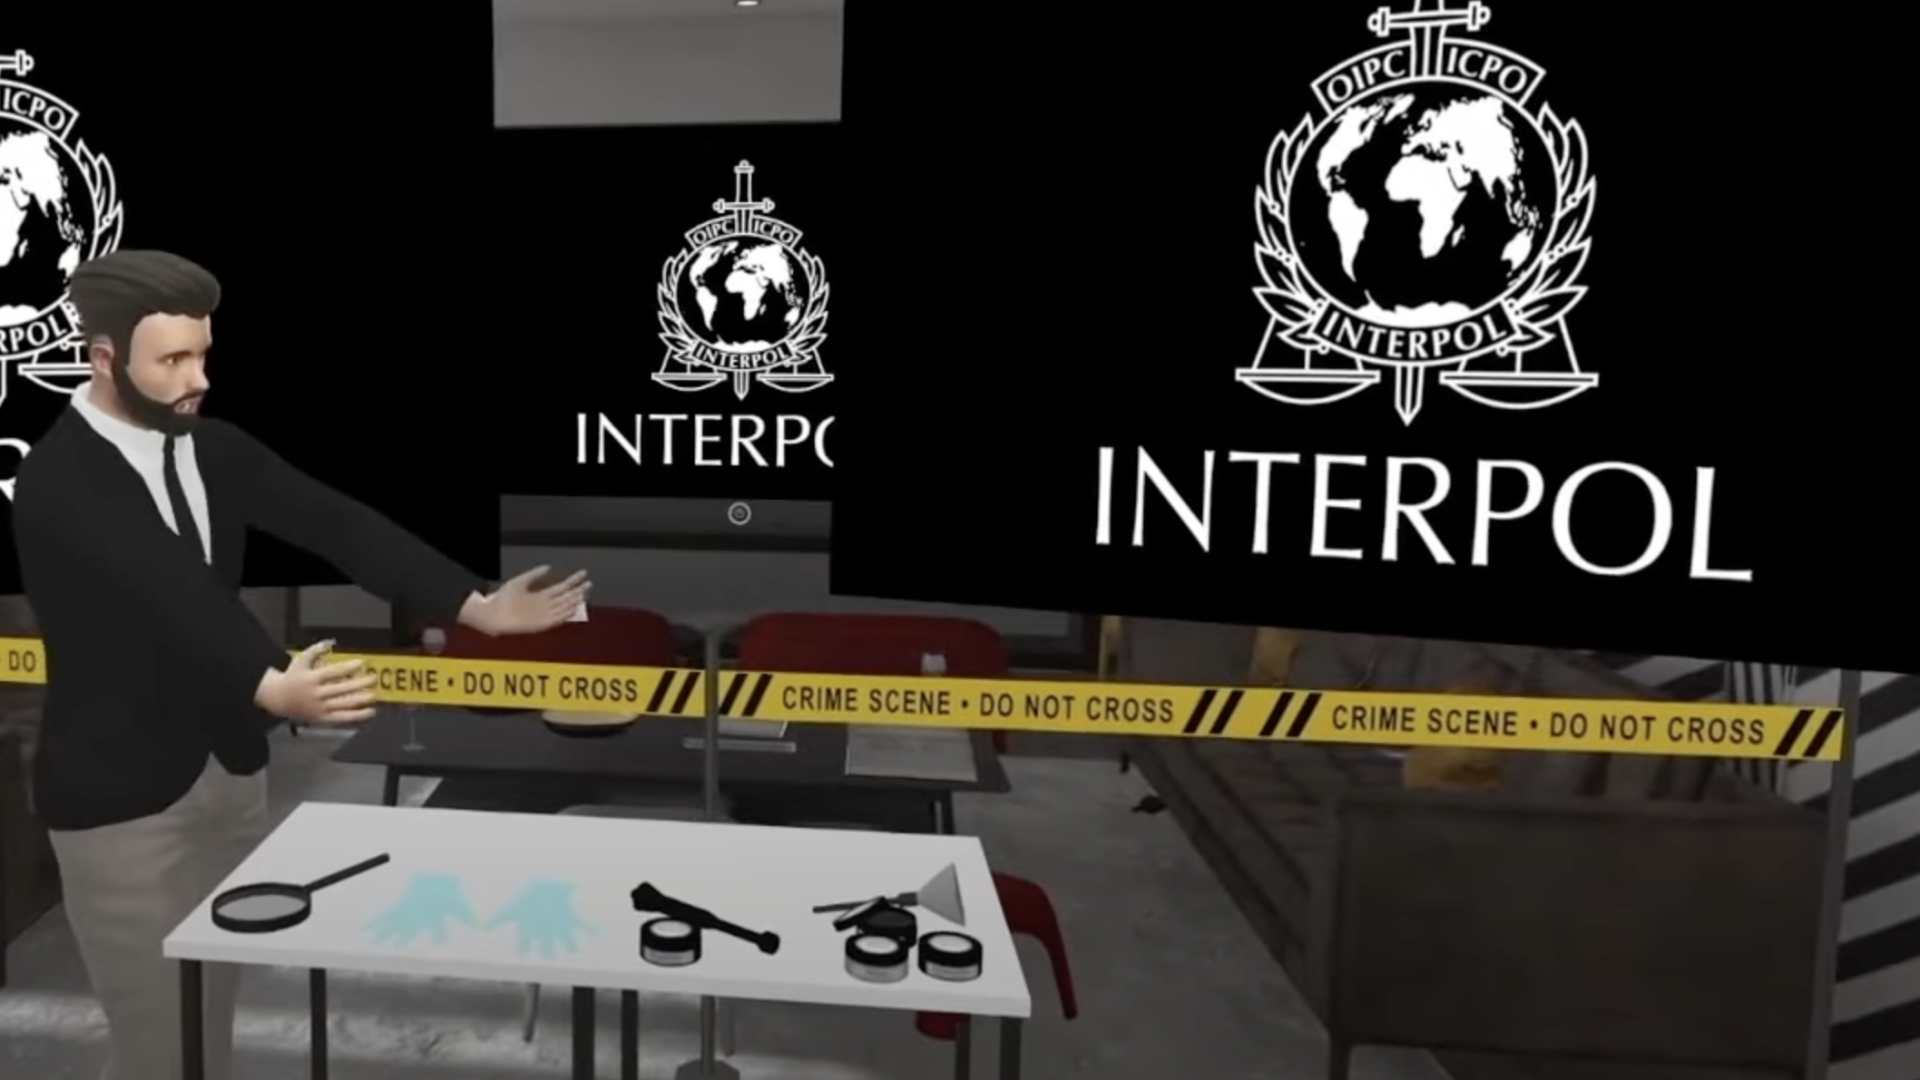 Interpol policing metaverse